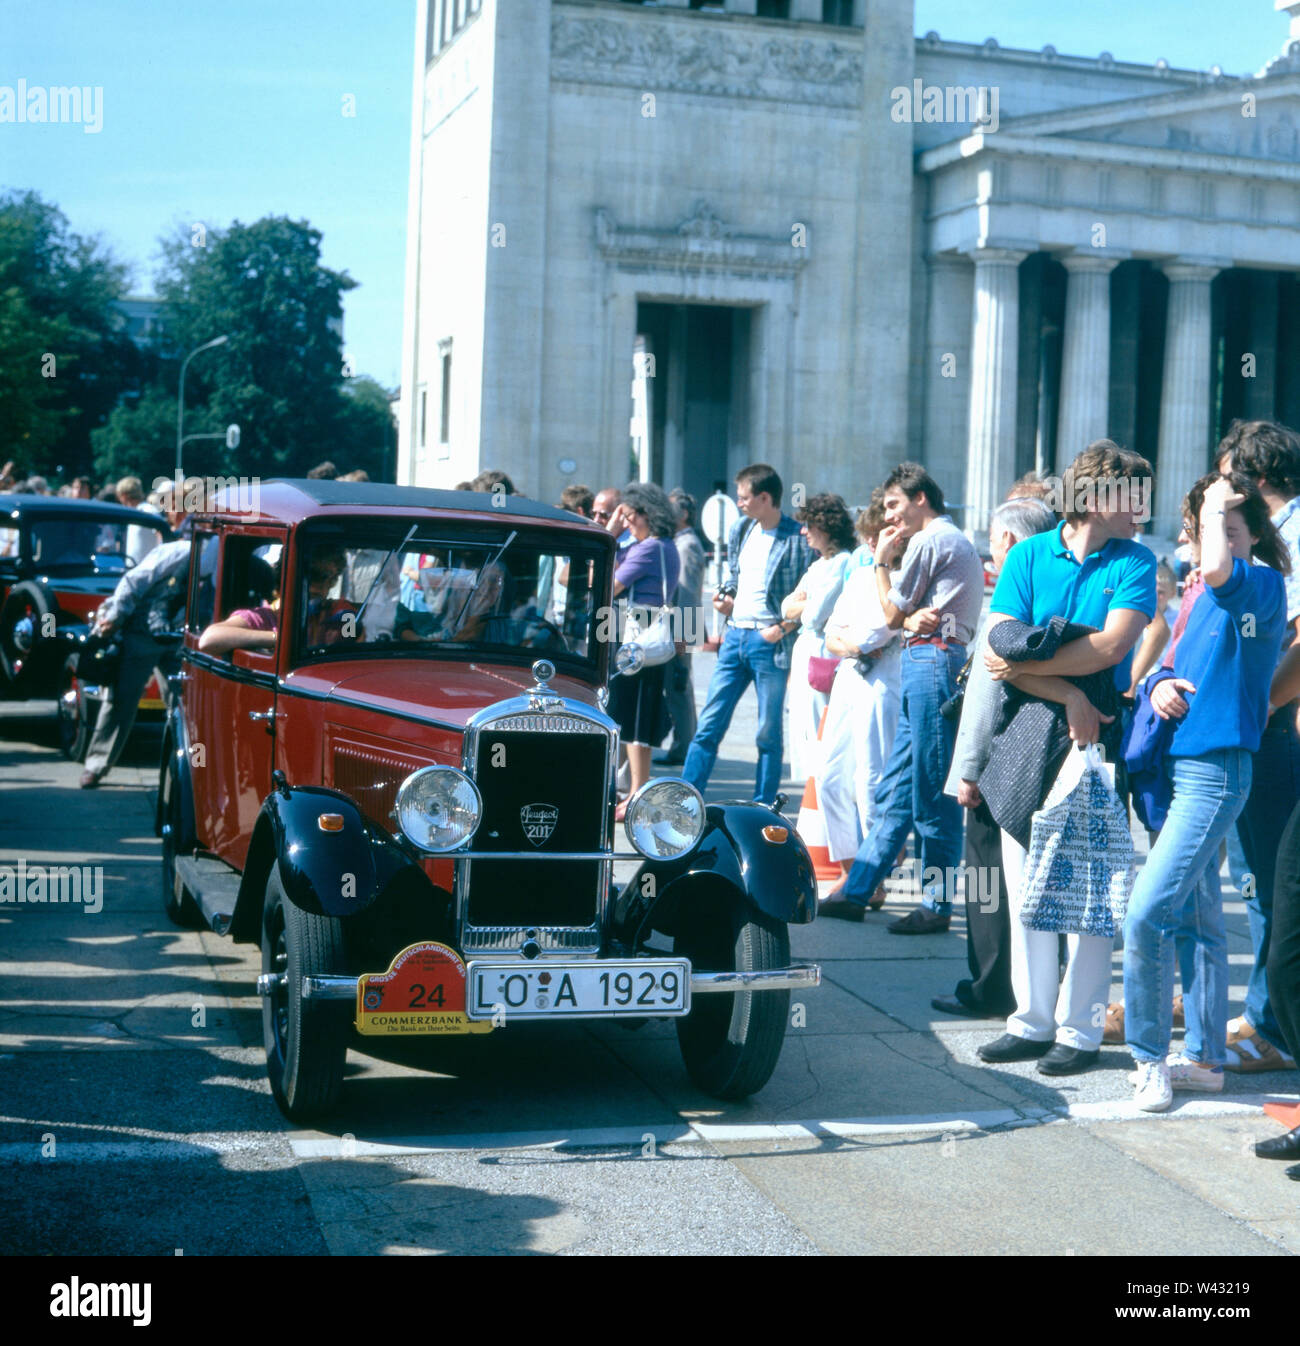 Ein Peugeot 201 wird während einer Oldtimershow in München Ende der 1980er Jahre präsentiert. A Peugeot 201 will be presented during a vintage car show in Munich at the end of the 1980s. Stock Photo